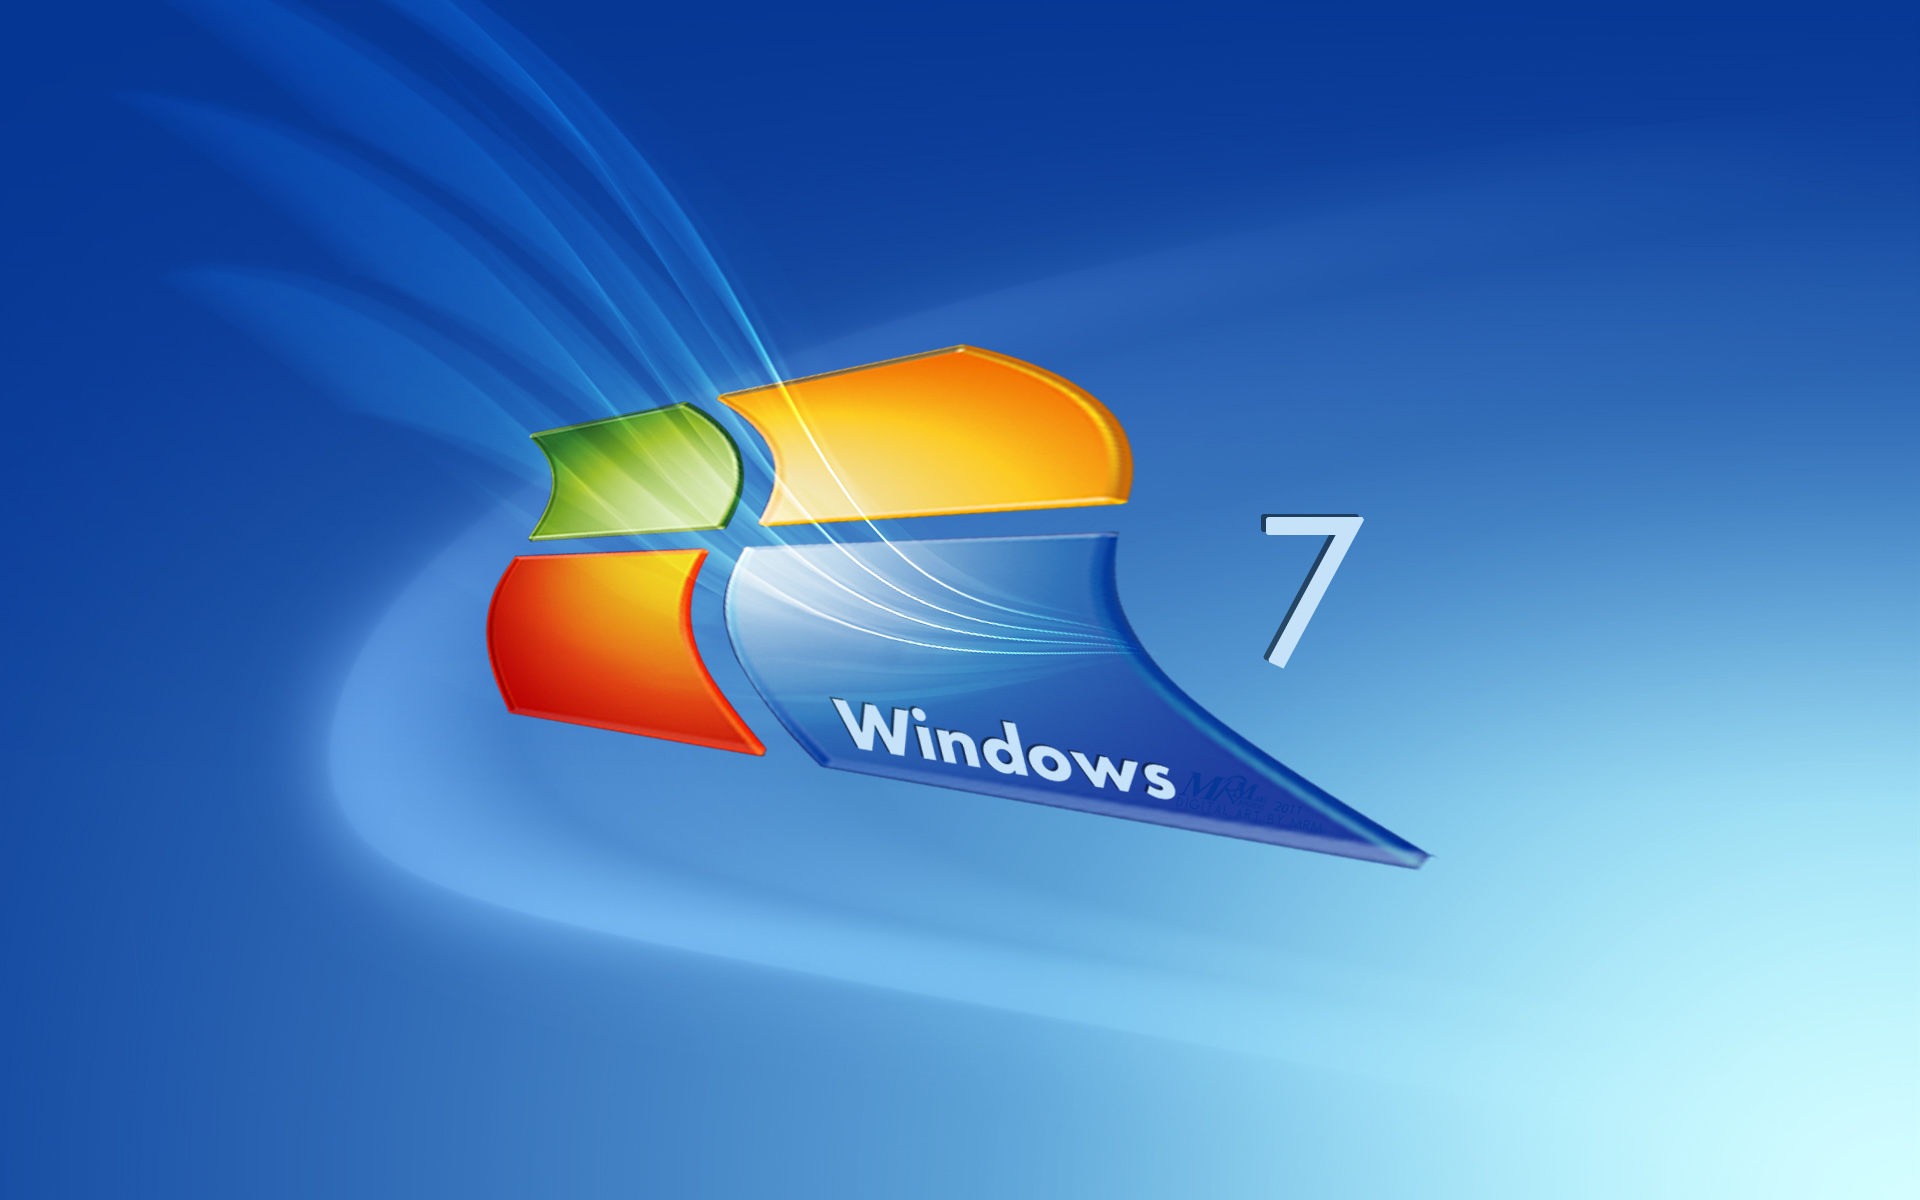 Hình nền cao cấp cho máy tính Windows 7: Bạn đang tìm kiếm một hình nền đẹp và sang trọng dành cho máy tính của mình? Hãy tưởng tượng việc hiển thị một bức hình nền cao cấp có độ phân giải cao, trong đó góc nhìn hai chiều đặc biệt sẽ giúp bạn tận hưởng một không gian tràn ngập cảm giác tuyệt vời. Hãy thử ngay hình nền cao cấp này để cảm nhận sự khác biệt ngay từ lần ban đầu.